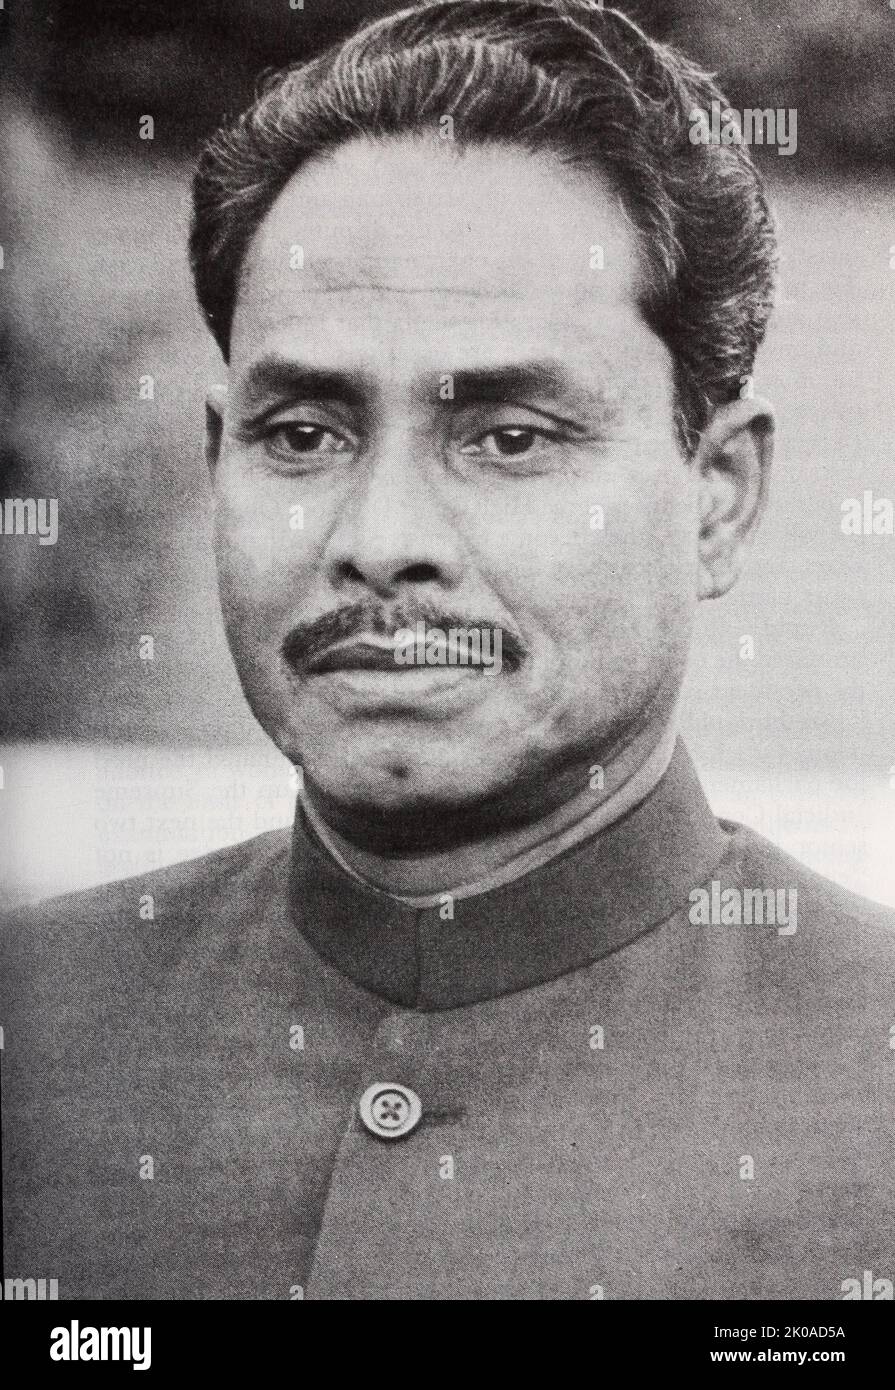 Hussain Muhammad Ershad (1930 - 2019) Chef de l'armée et homme politique bangladais qui a été président du Bangladesh de 1983 à 1990, un temps beaucoup considèrent comme une dictature militaire Banque D'Images